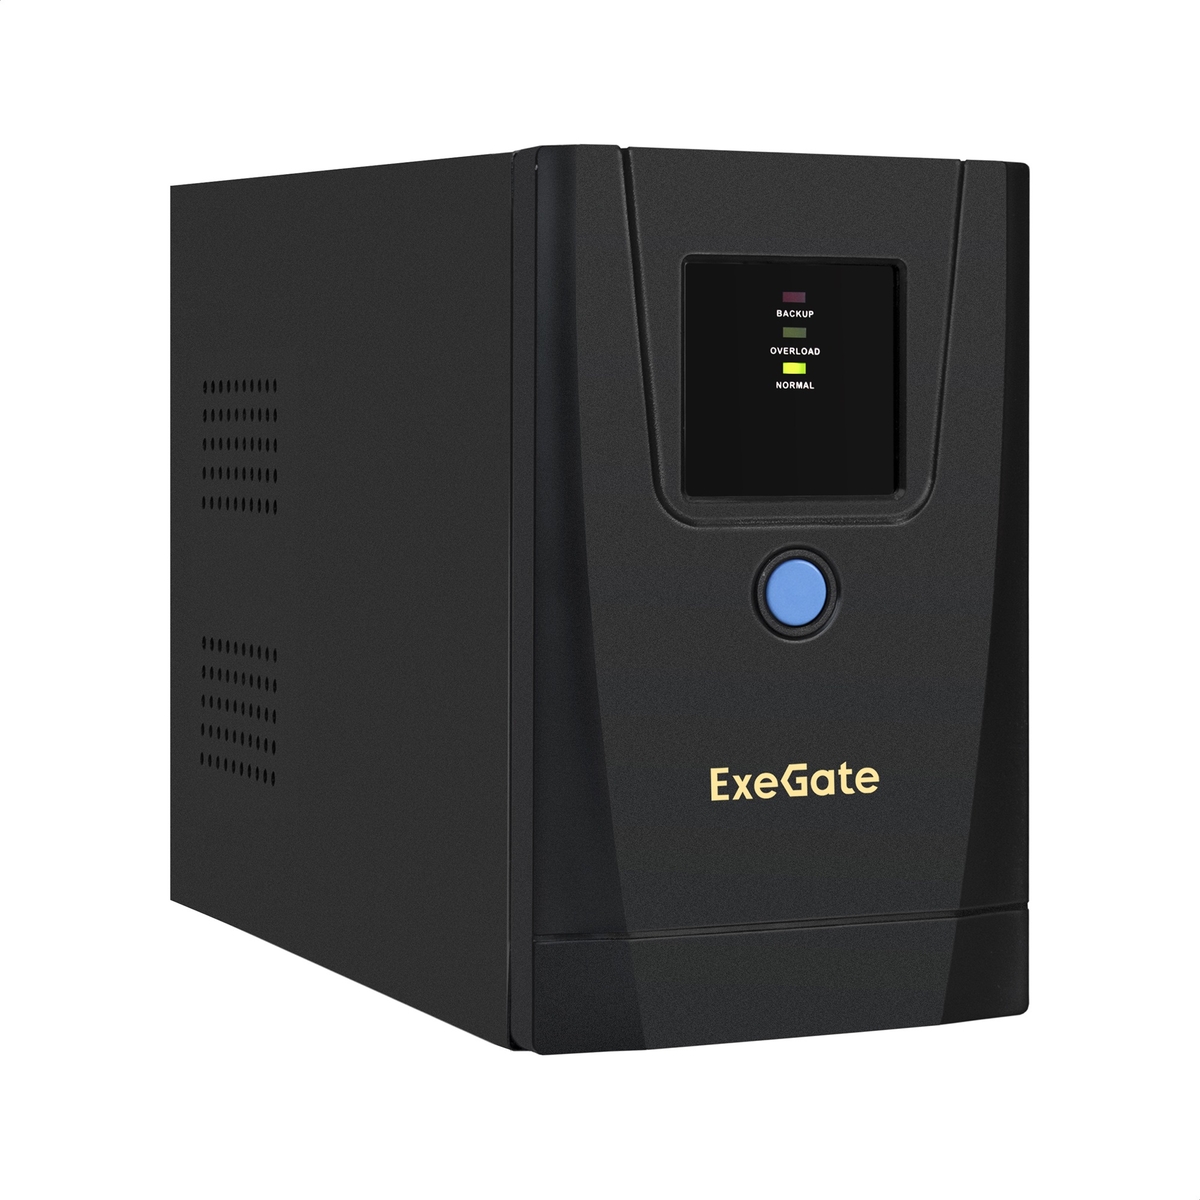  ExeGate SpecialPro UNB-900.LED.AVR.1SH.2C13.RJ.USB